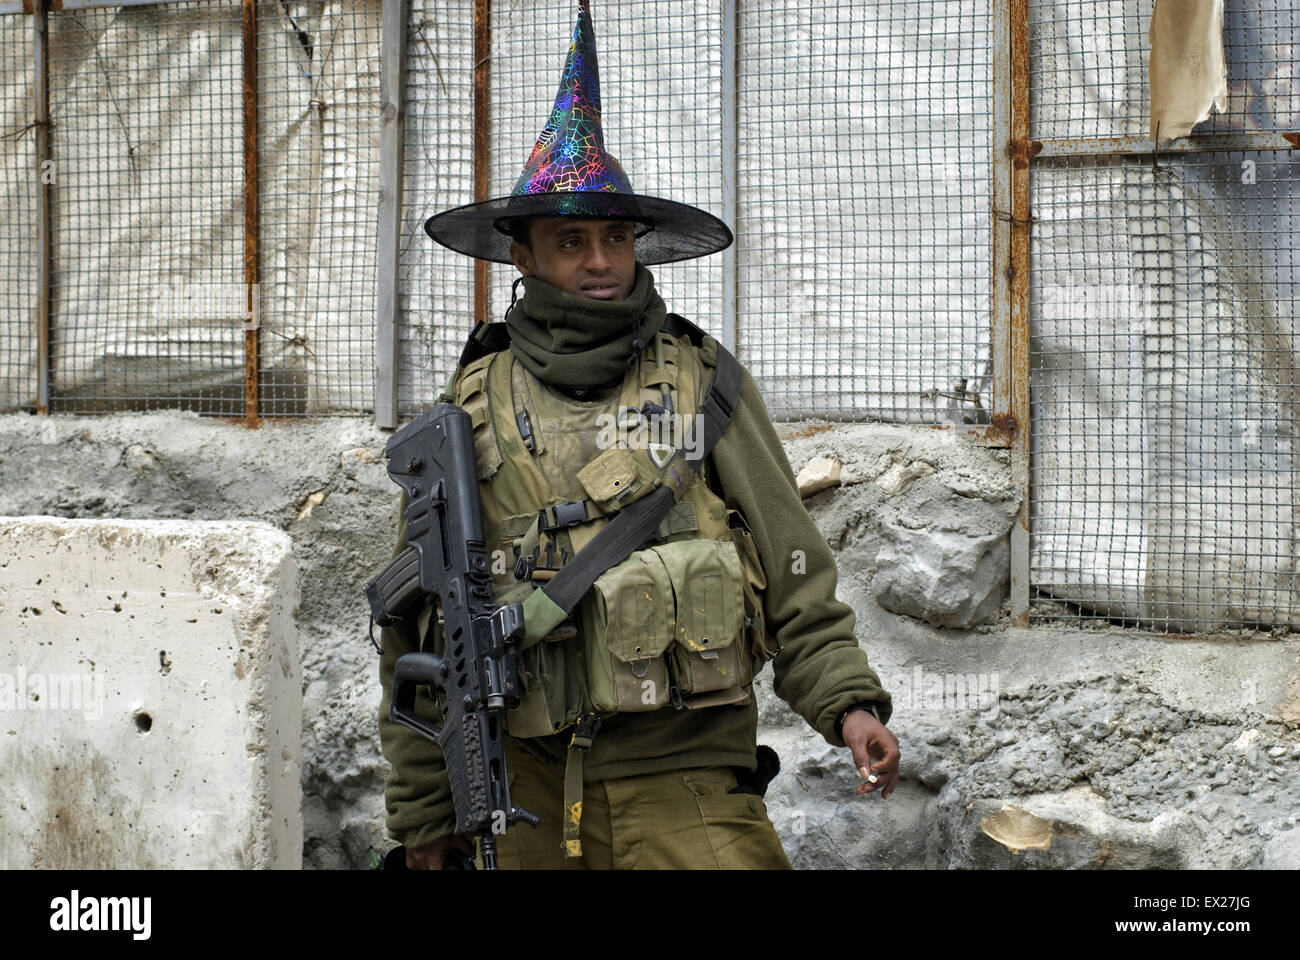 Un soldat israélien armé de la communauté Beta Israël également connu sous le nom de Juifs éthiopiens portant un chapeau de clown lors de fête de Pourim à Tel Rumeida juifs Cisjordanie Israël Banque D'Images